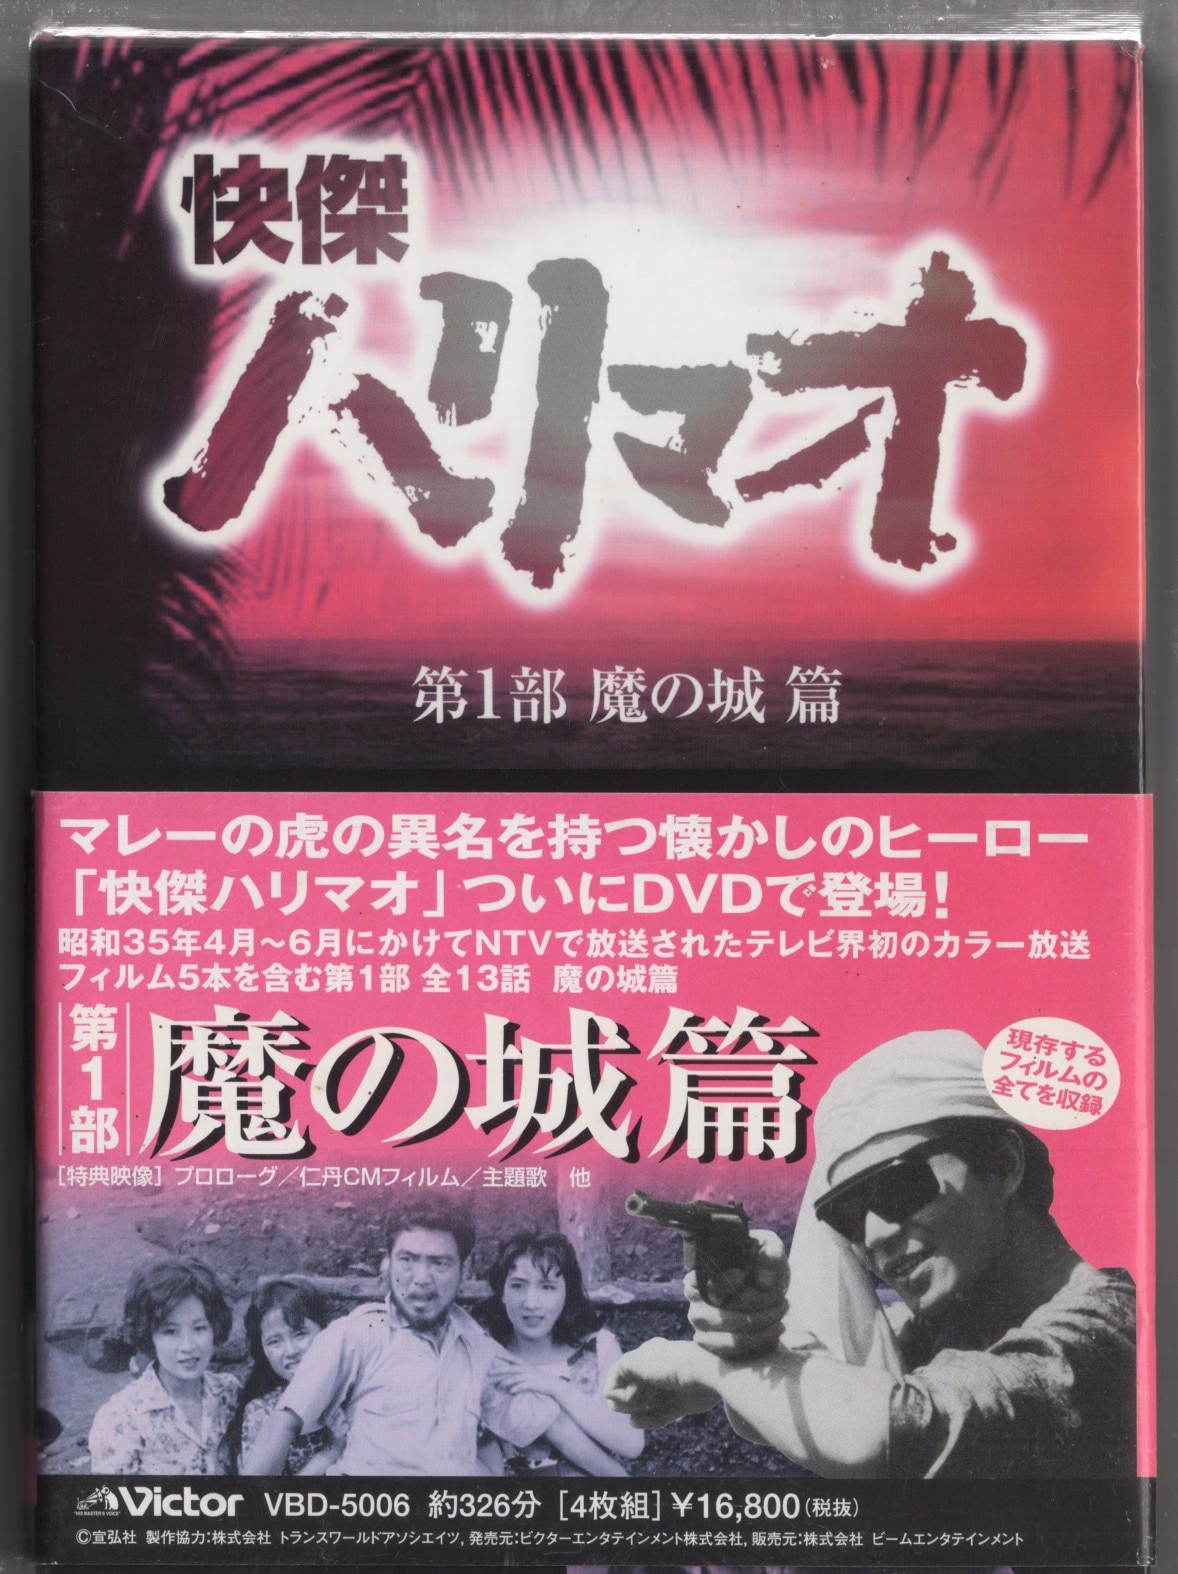 月光仮面 DVD-BOX1 第1部 どくろ仮面篇：COCOHOUSE - CD・DVD